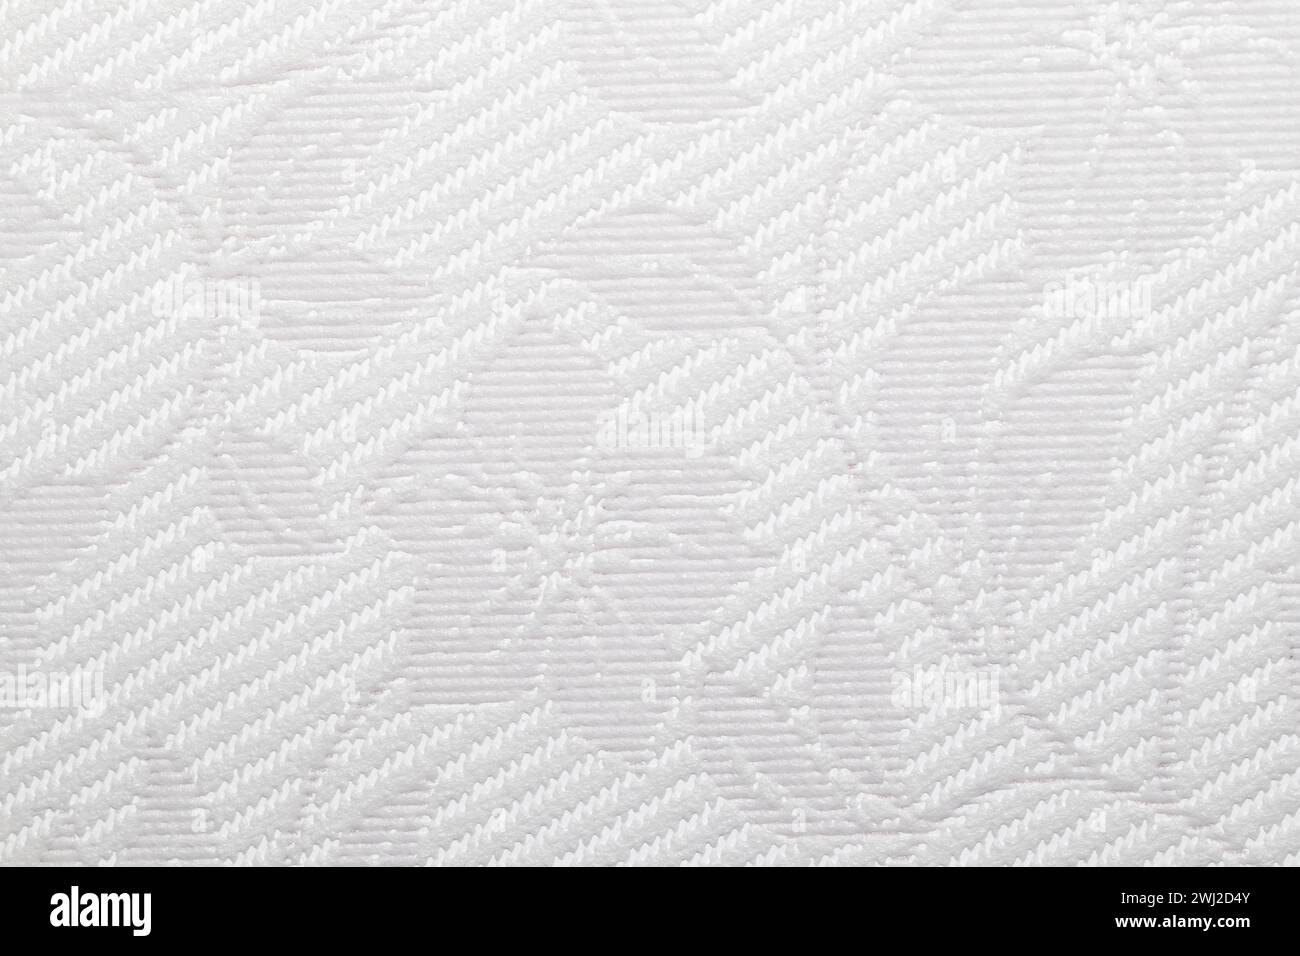 Questa immagine presenta un dettagliato primo piano di sfondi in vinile testurizzato grigio chiaro che mostrano un intricato motivo a trama diagonale con elementi floreali. Foto Stock